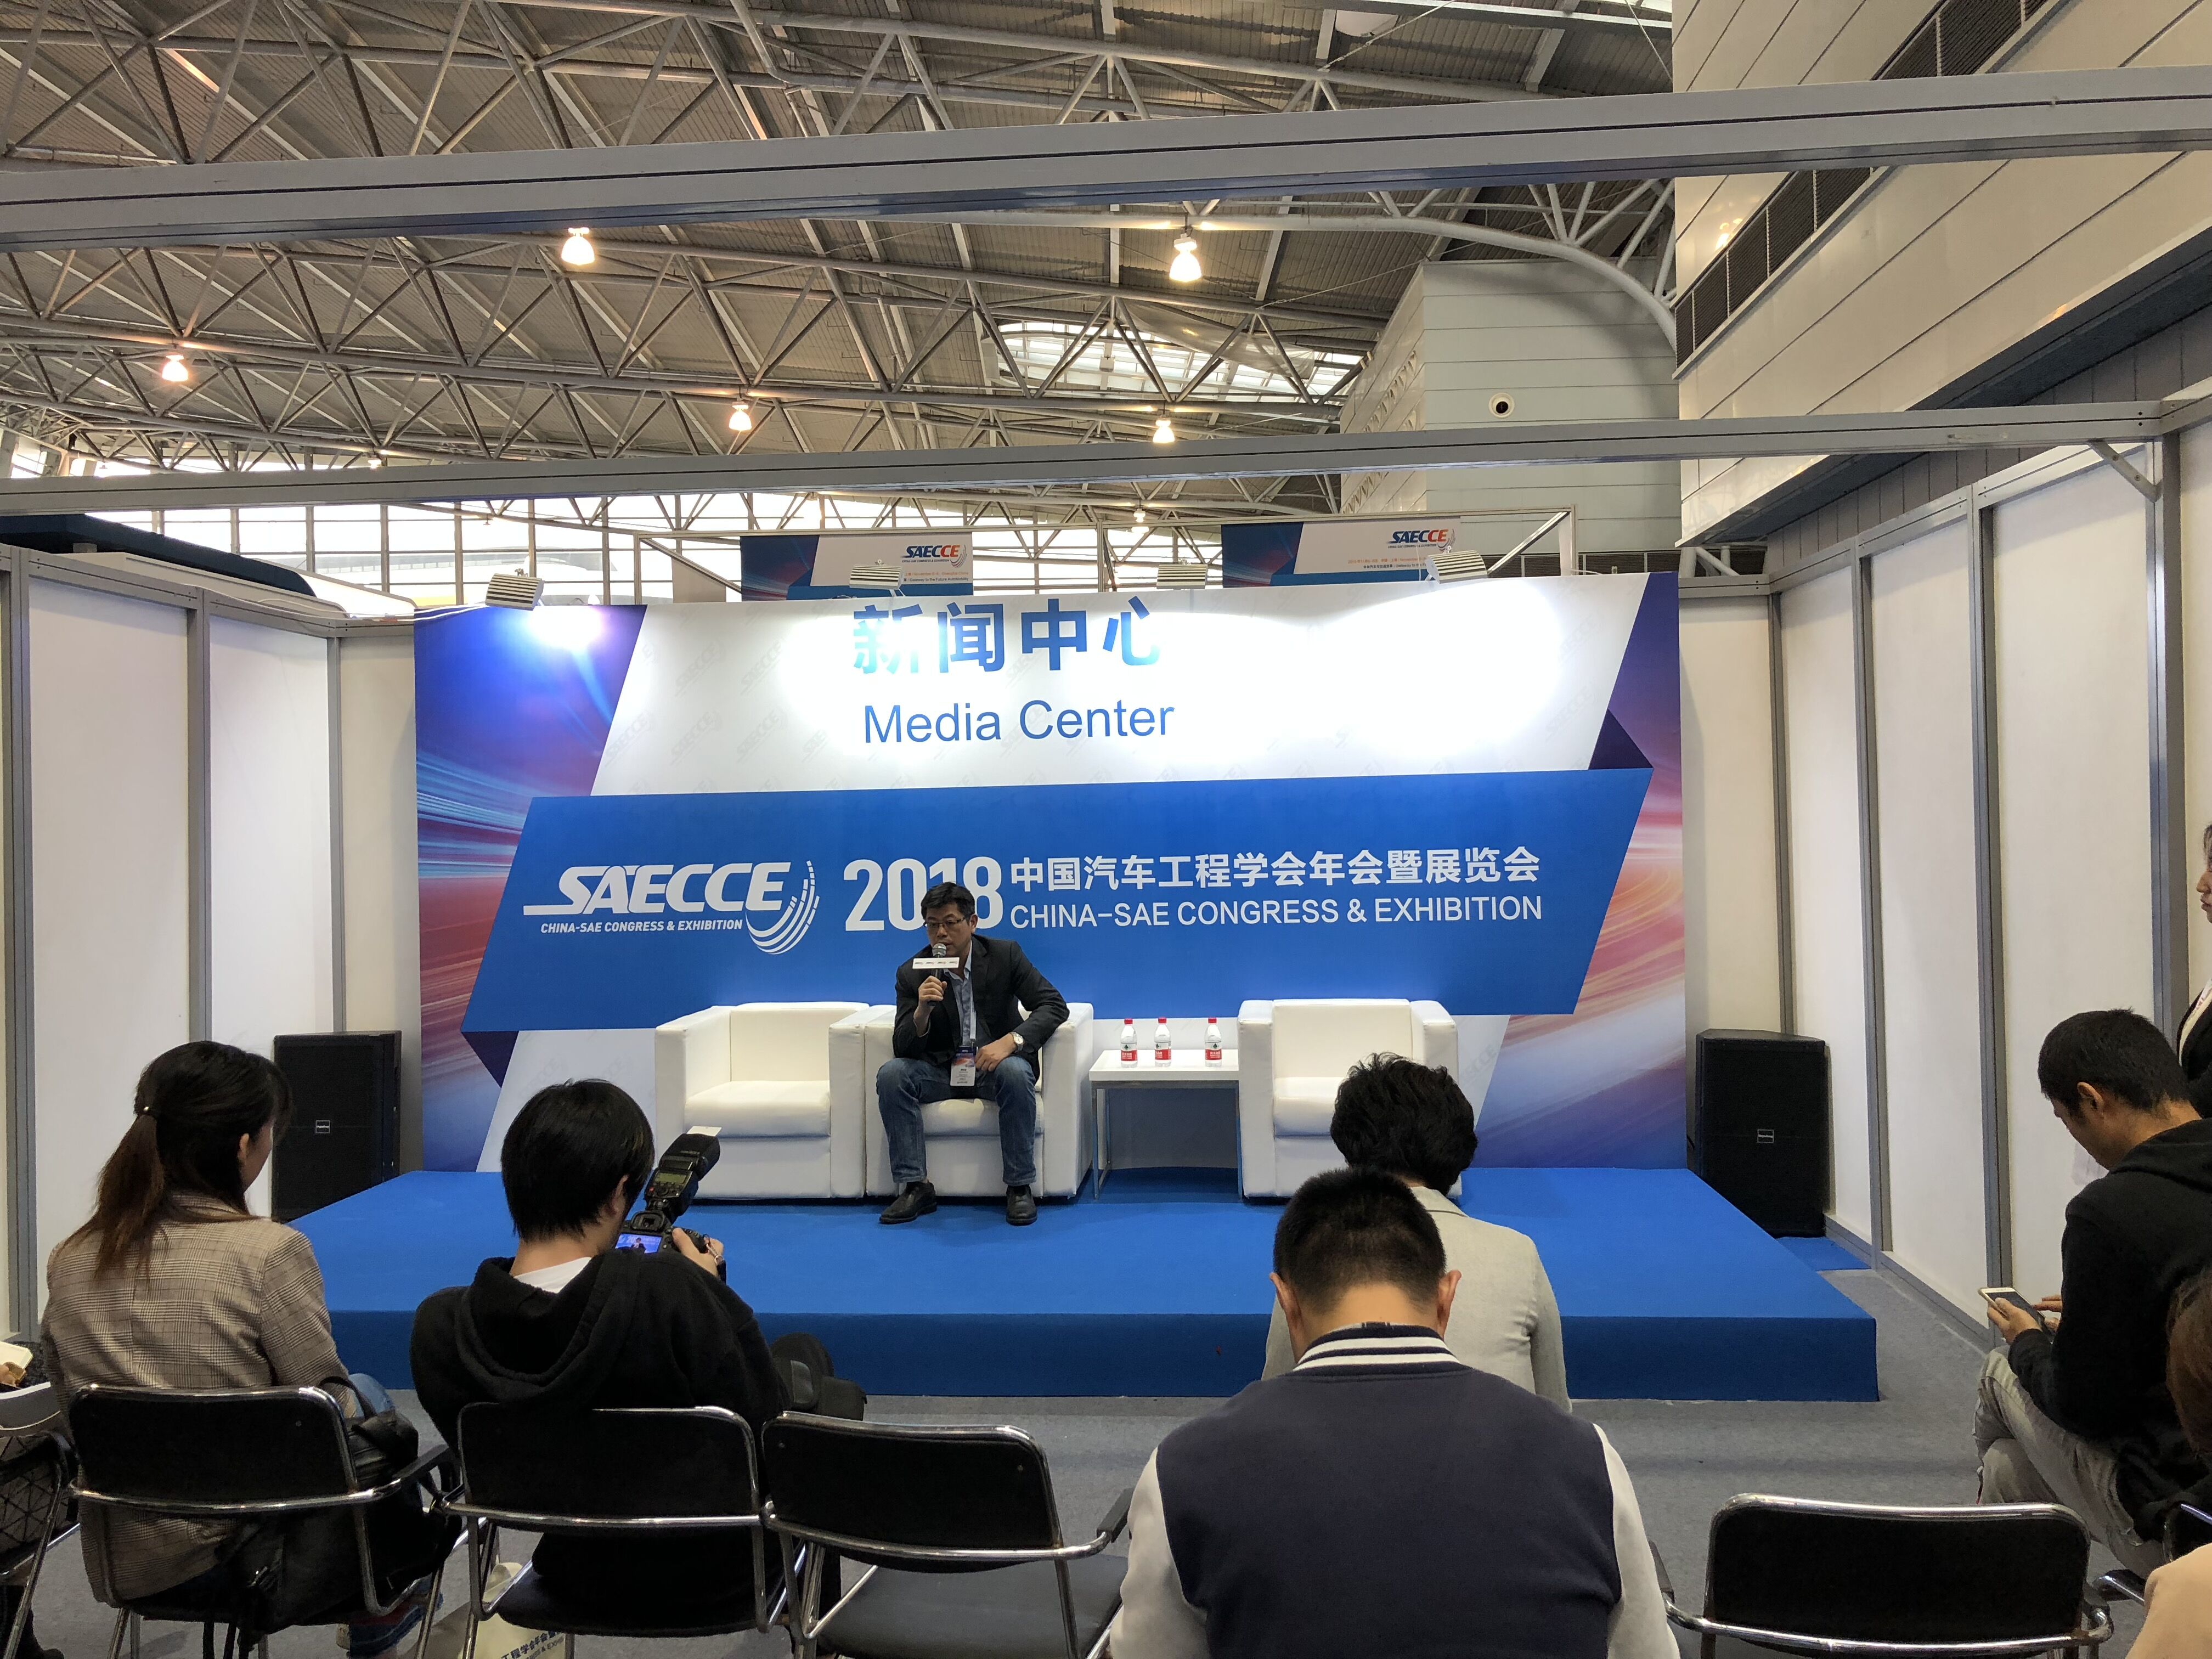 升微科技有限公司参加2018中国汽车工程学会年会暨展览会